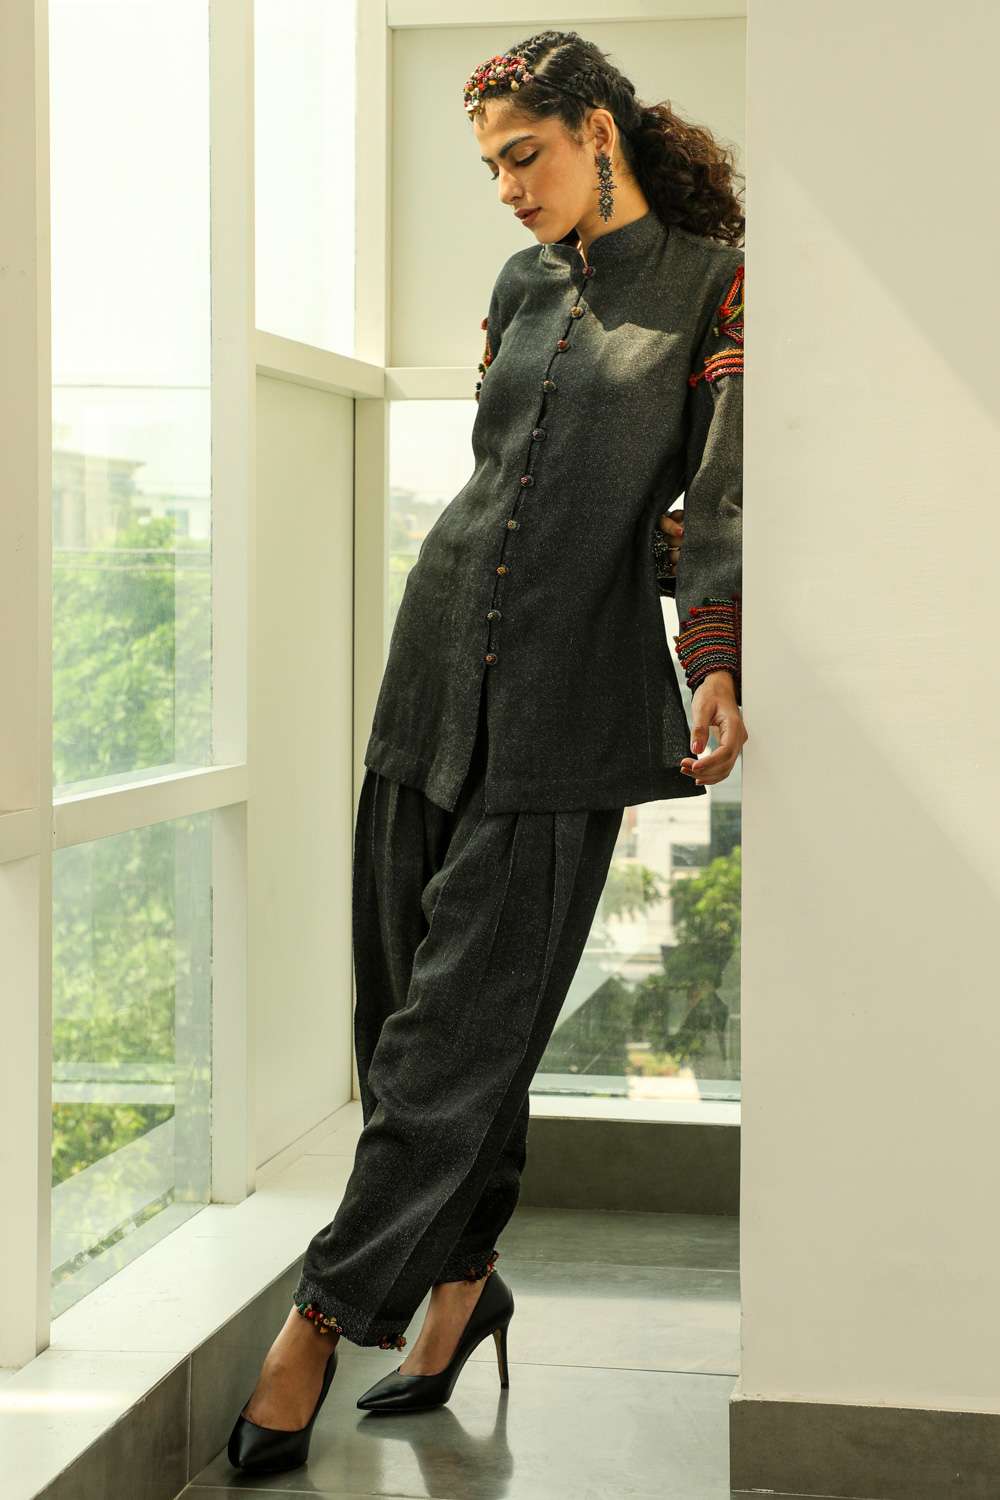 Atasi Readymade Salwar Pants Black Embroidered Cotton Salwar Kameez Suit  Indian Dress - 14 - Walmart.com